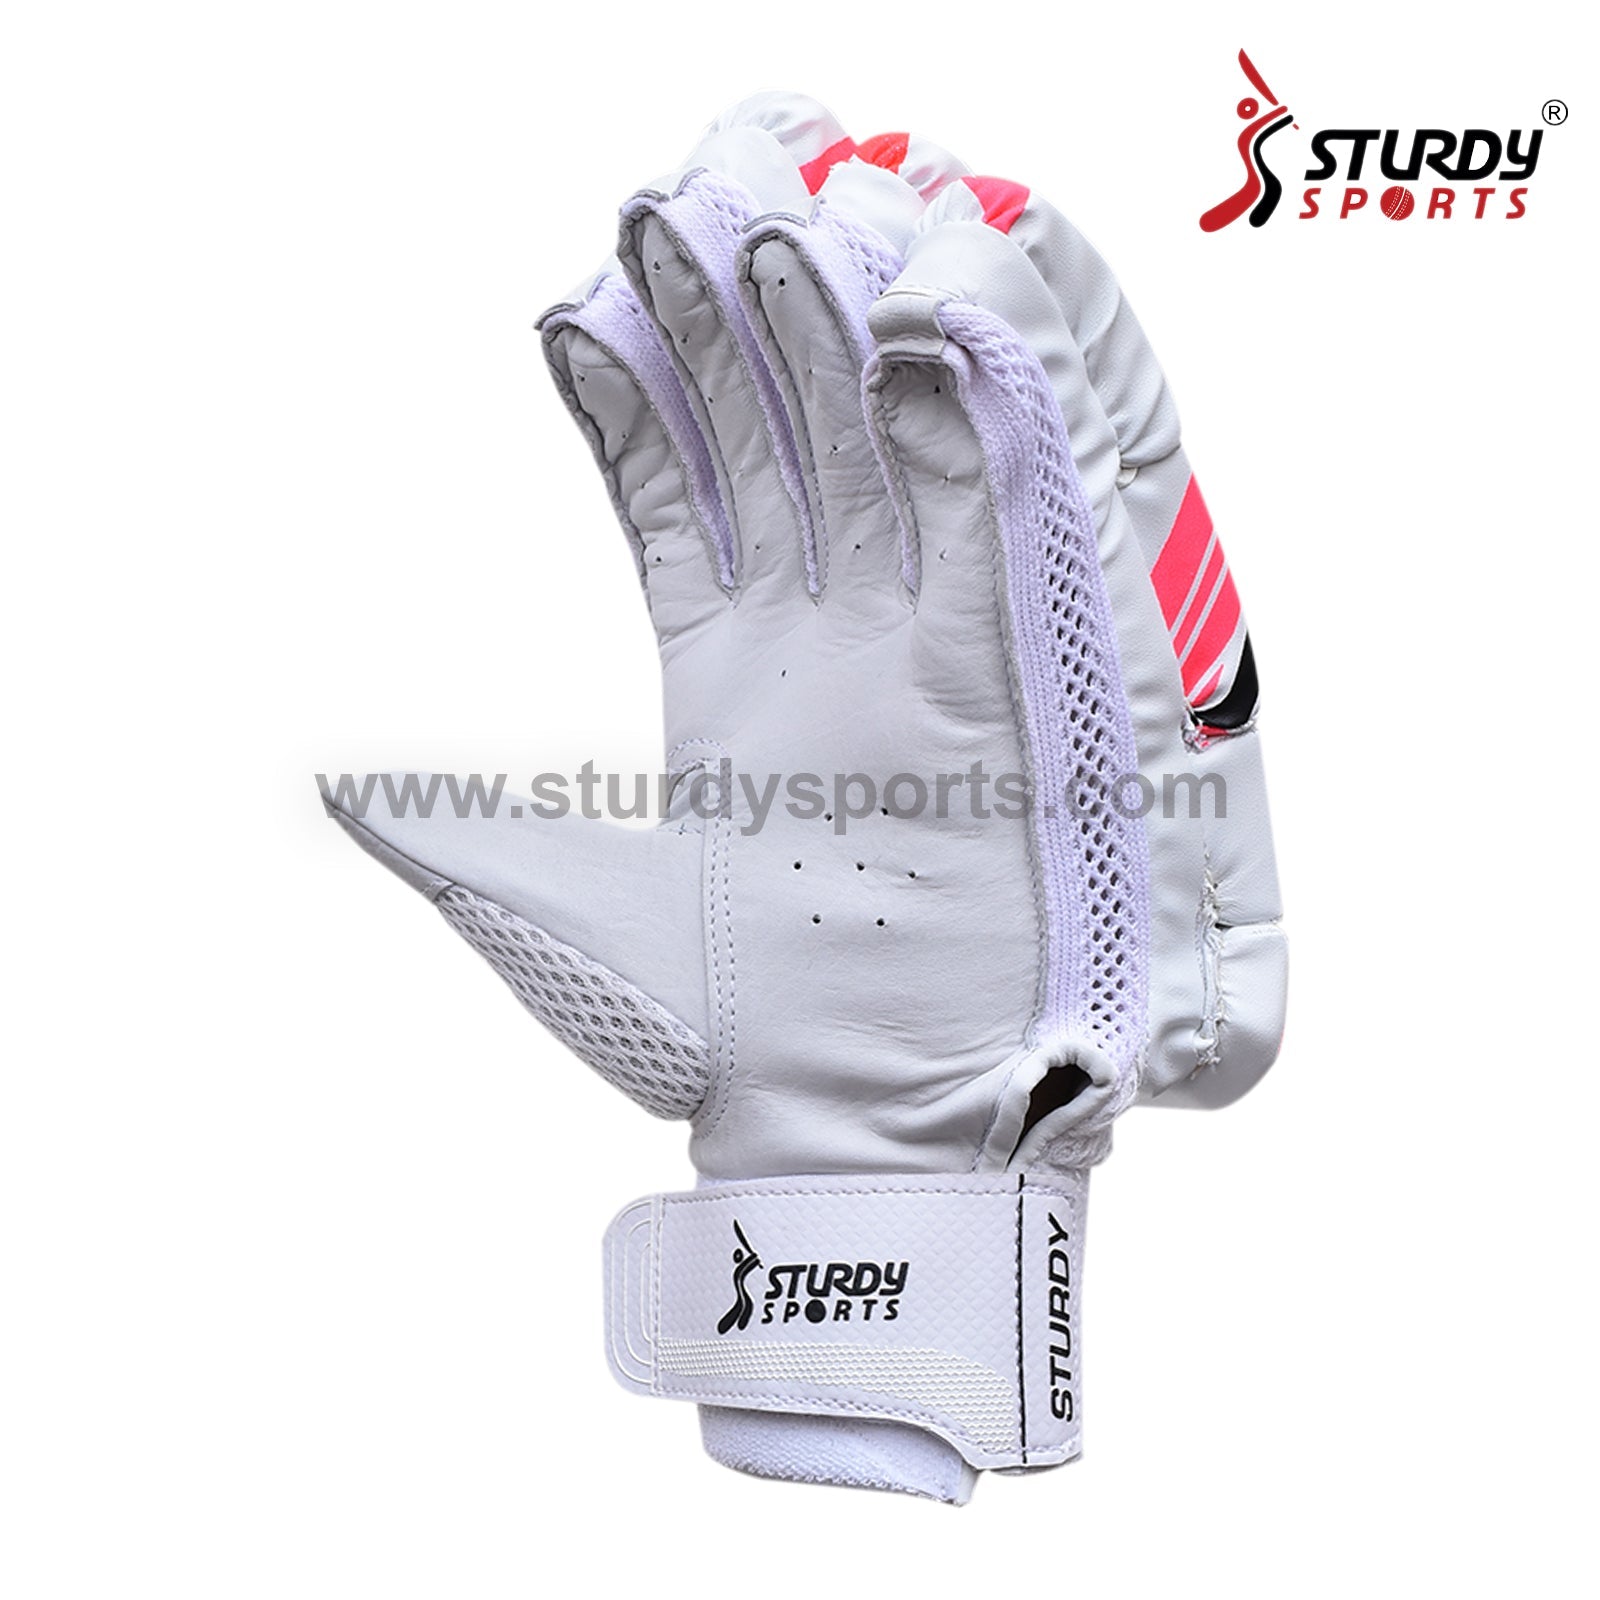 Sturdy Ziva Cricket Batting Gloves - Senior